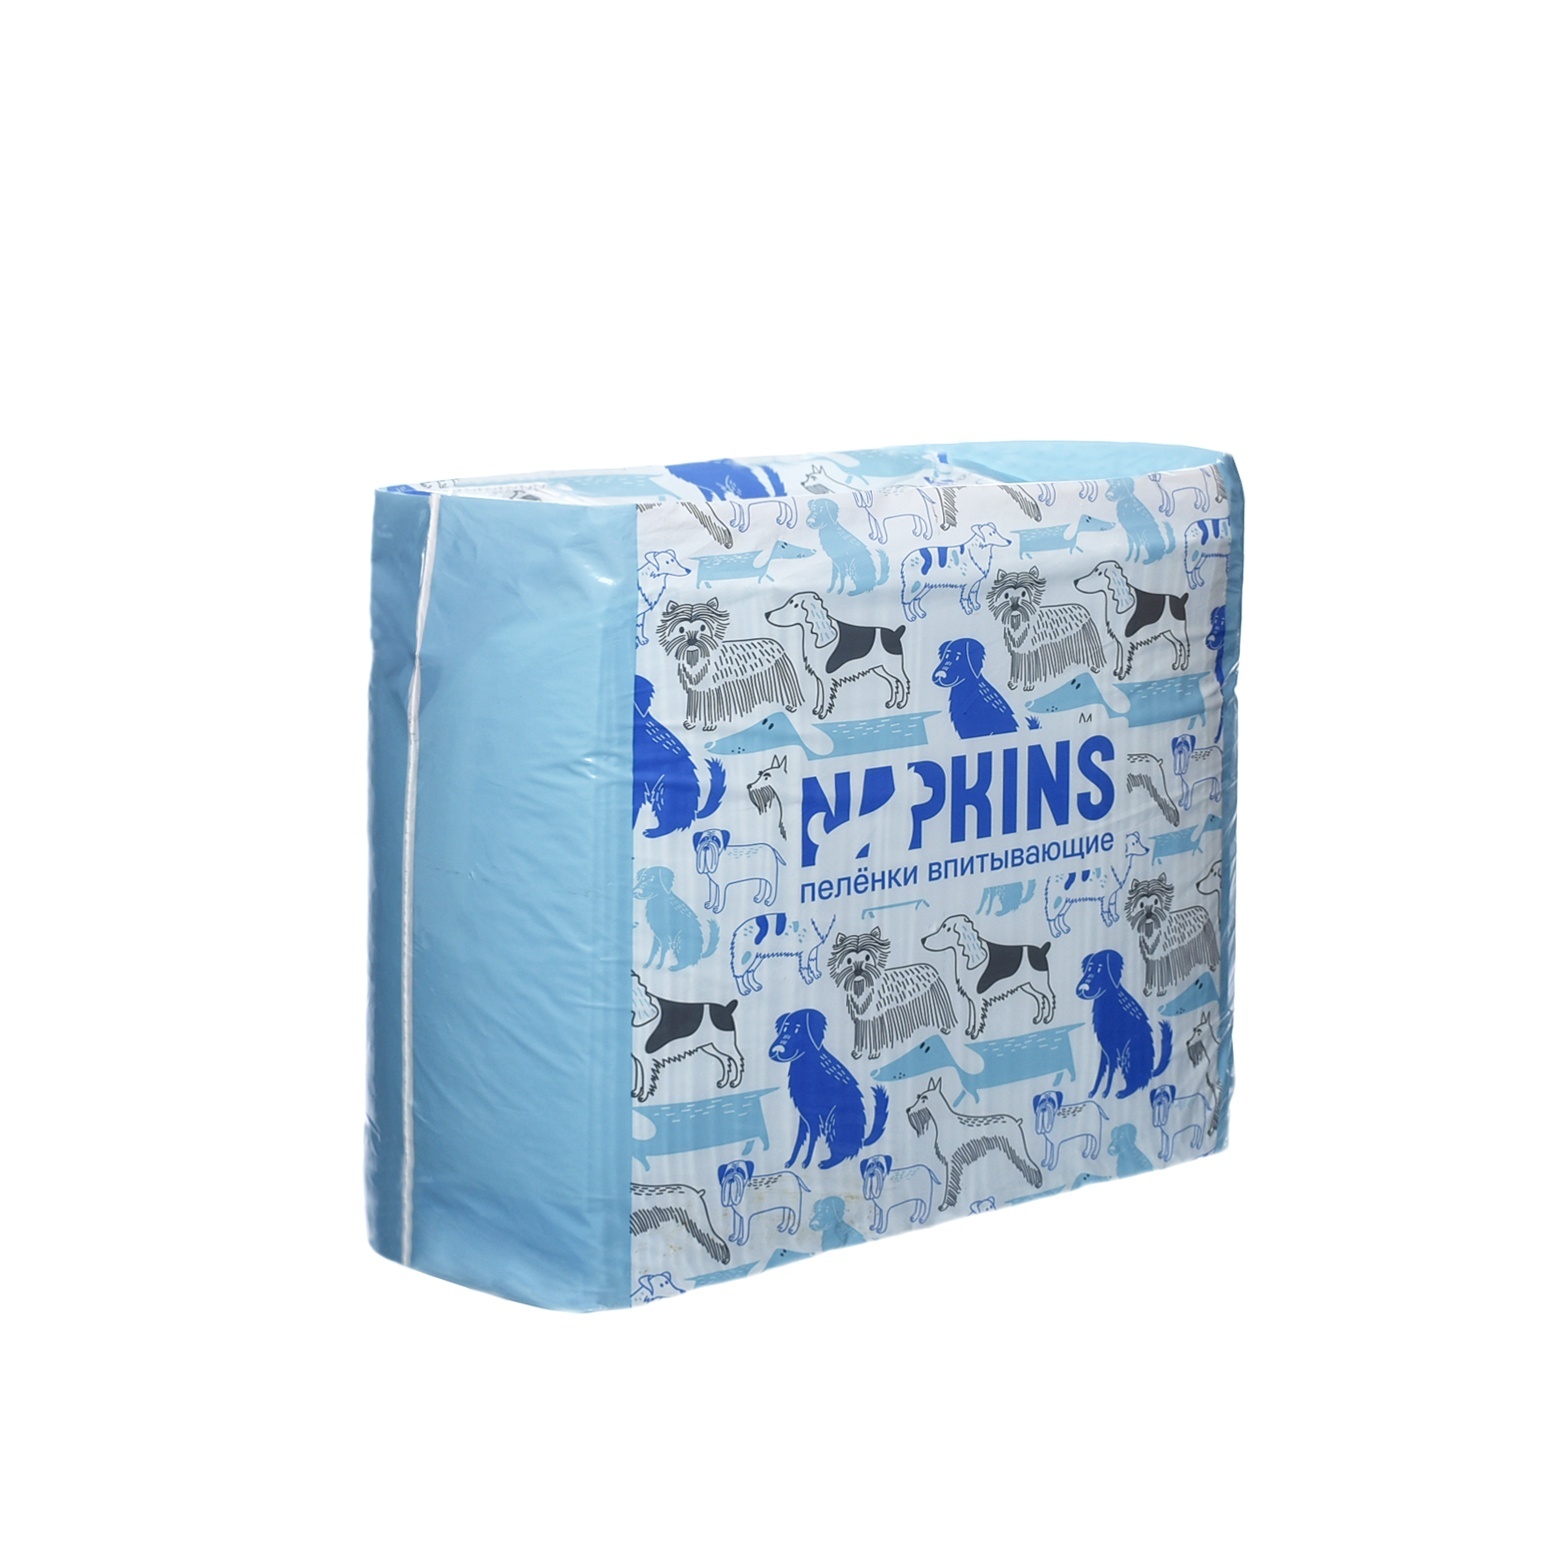 Пеленки для кошек и собак одноразовые Napkins гелевые 60 x 40 см, 30 шт